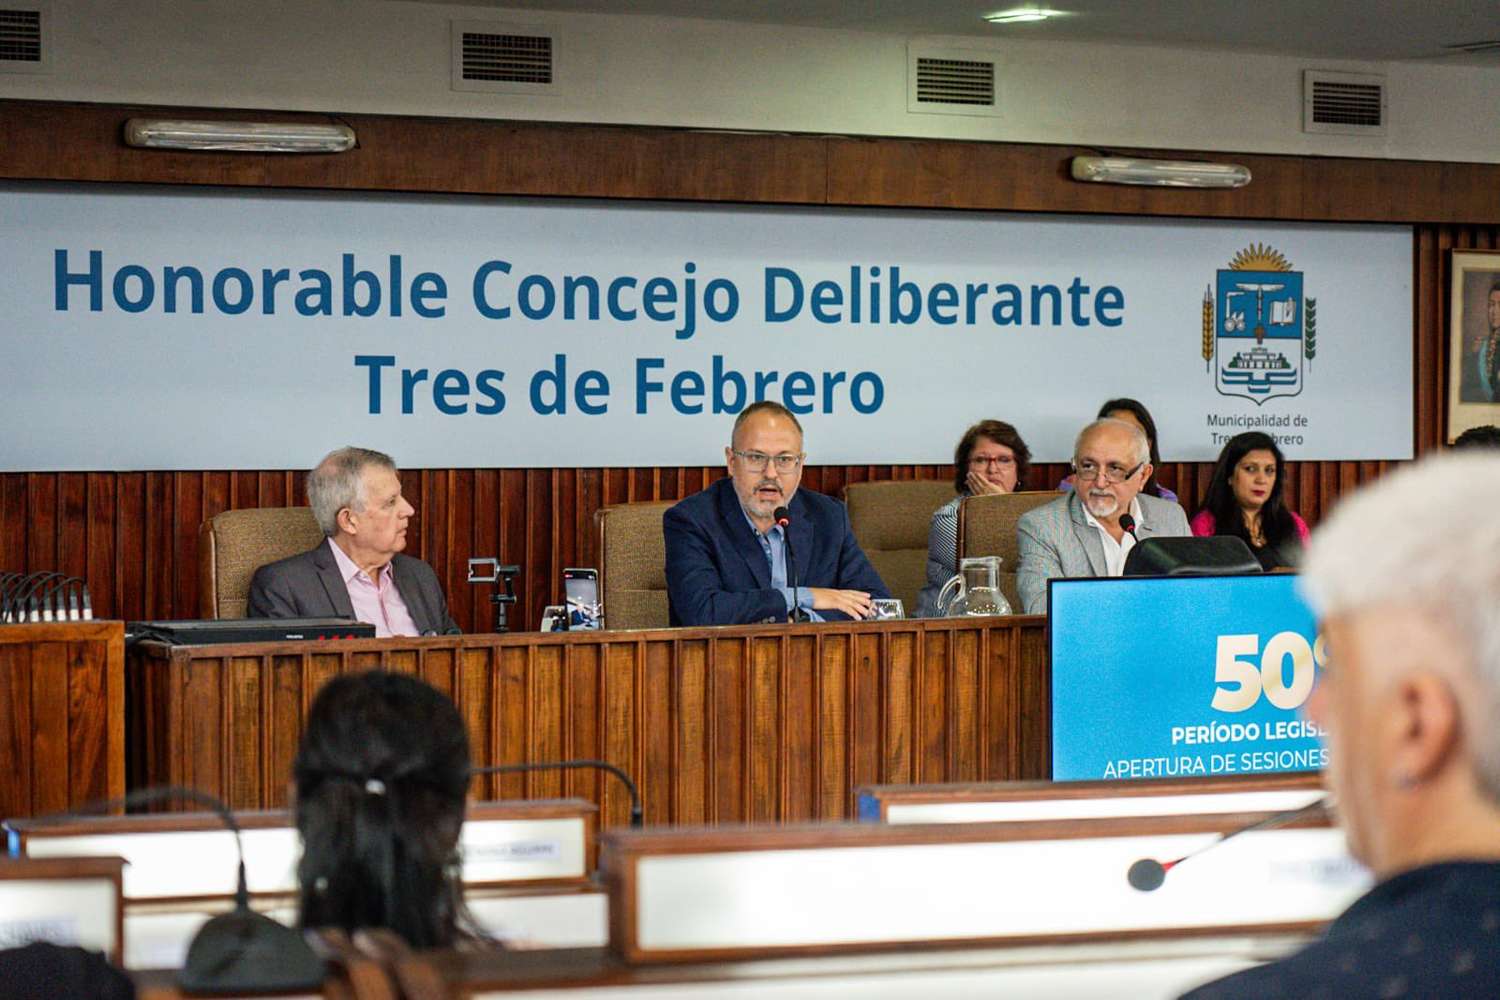 Apertura de sesiones en Tres de Febrero: "Aportamos nuestro grano de arena para la salida de la crisis", dijo Valenzuela